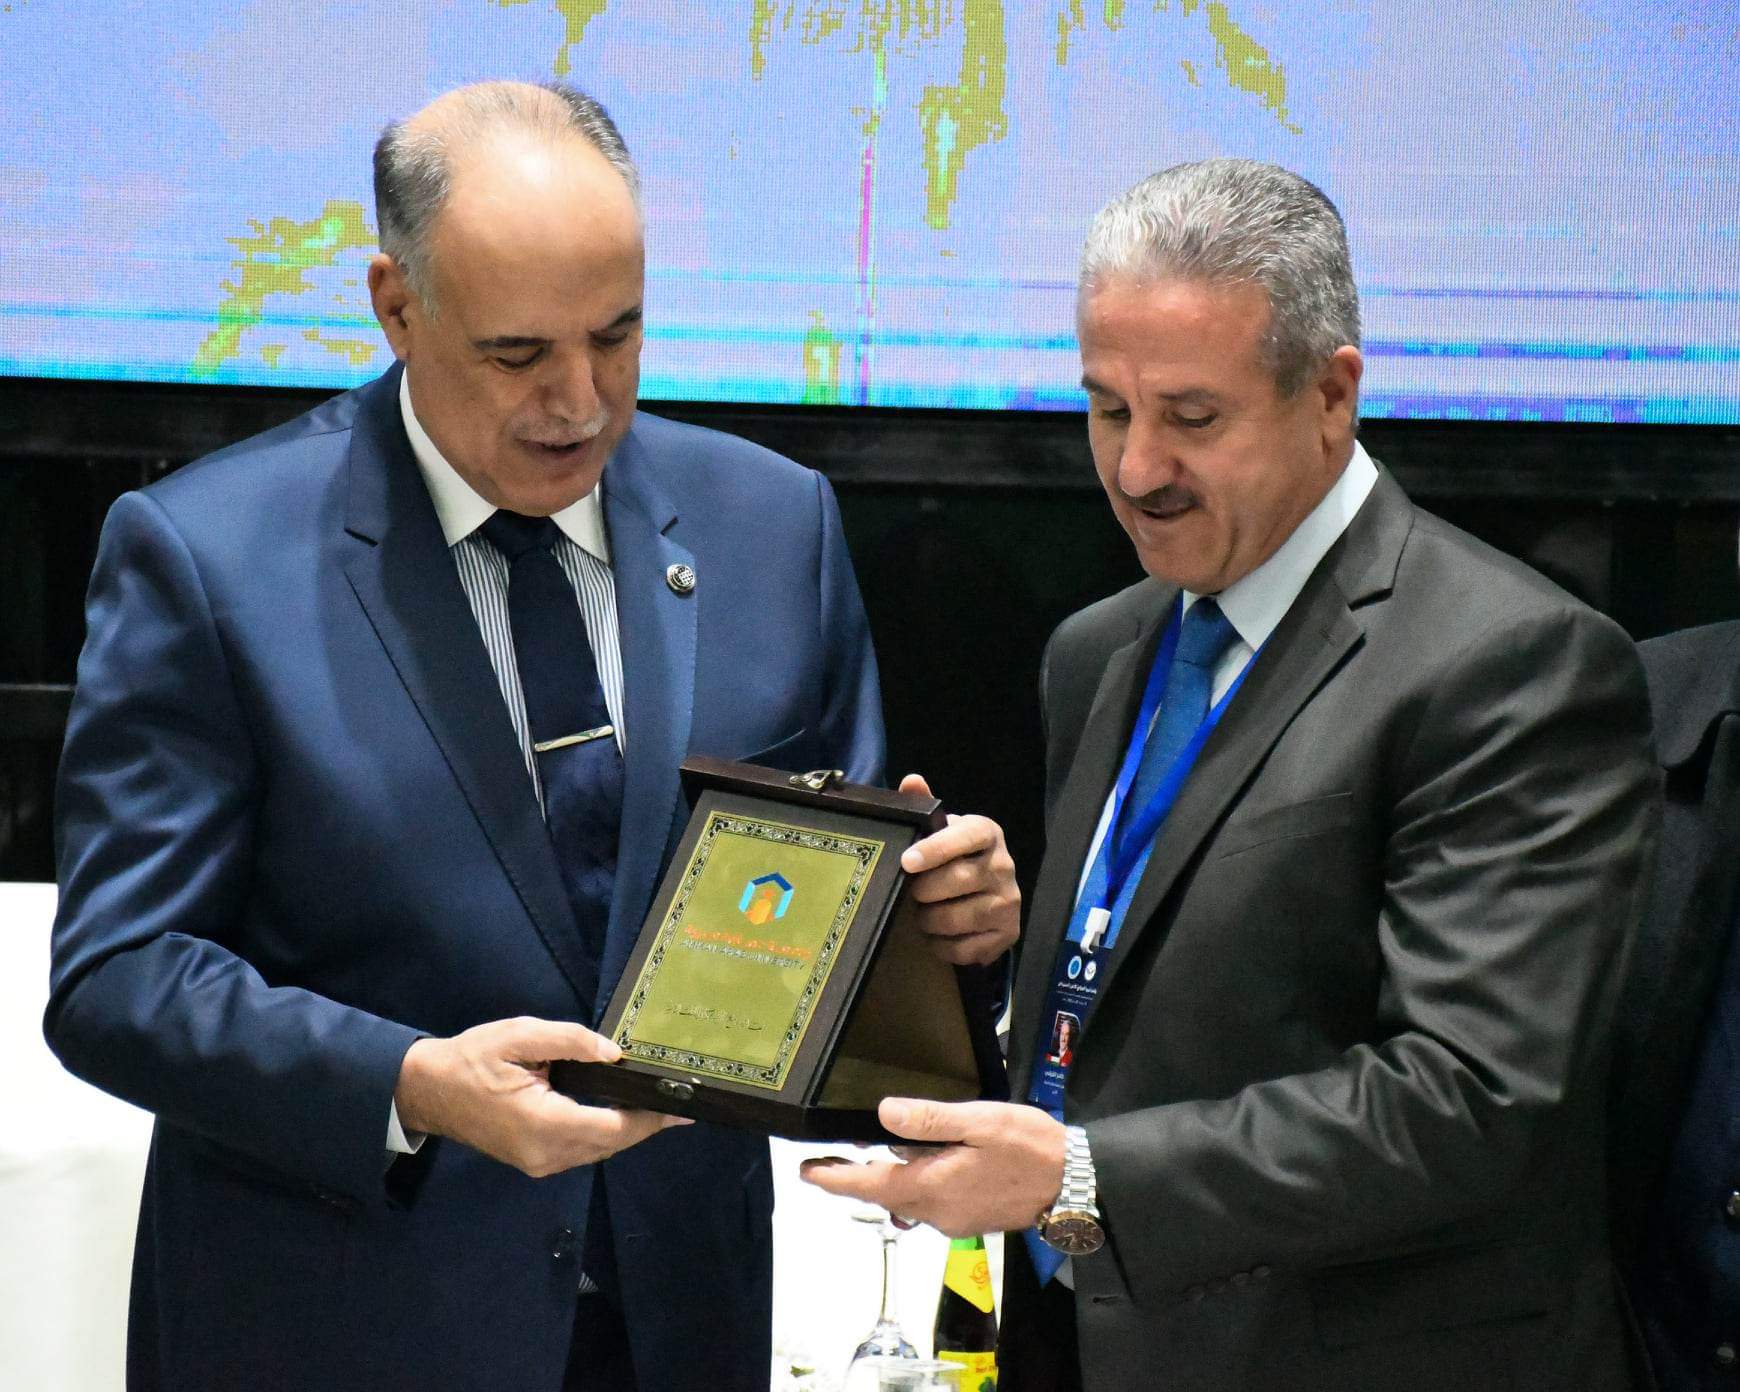 جامعة عمان العربية تكرم مستشار الأمن القومي إبراهيم بوشناف في ختام مؤتمر ليبيا الدولي للأمن السيبراني